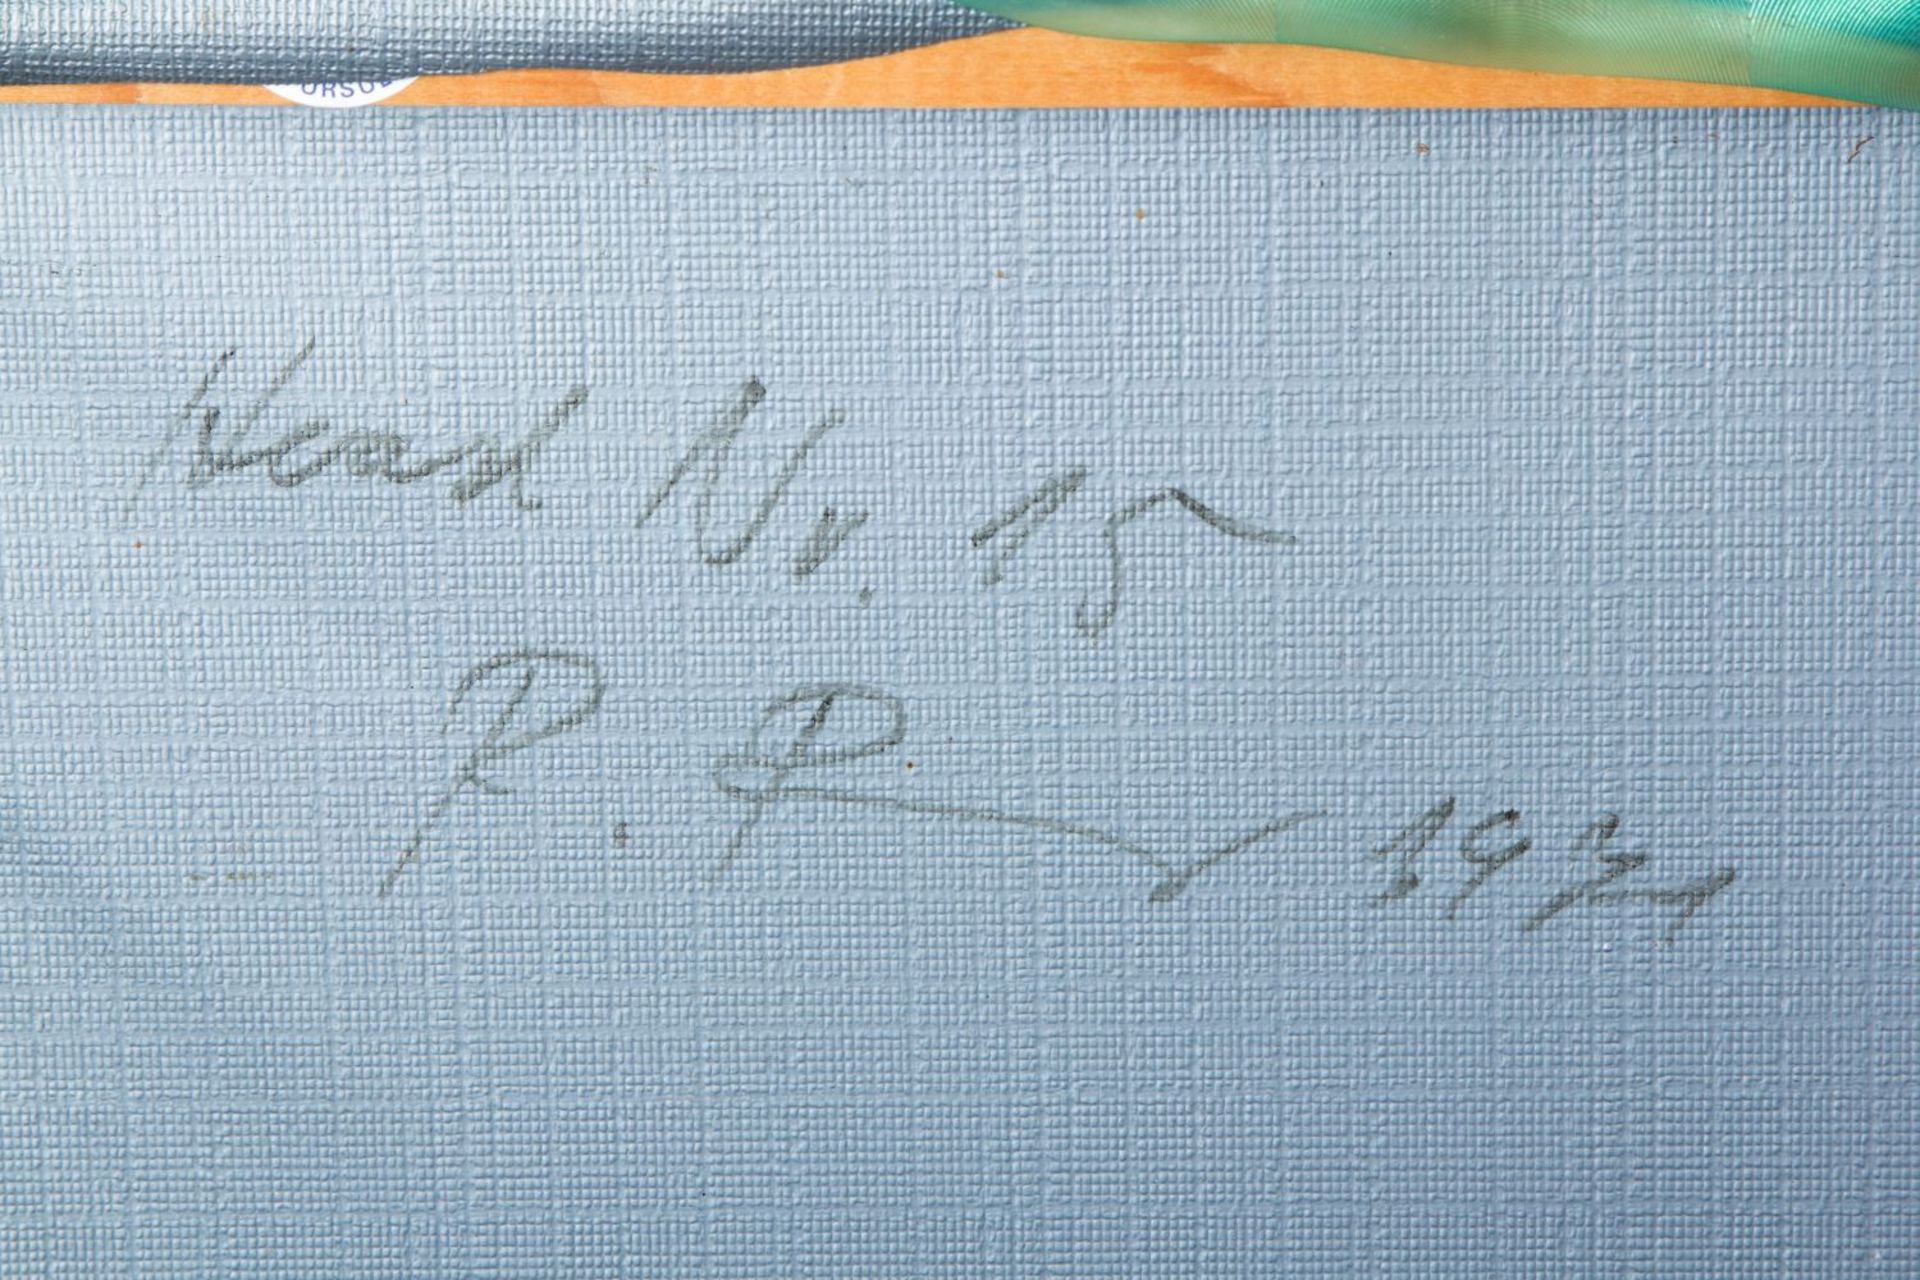 Unbekannt, 20. Jh. Head Nr. 15. Acryl mit Schablone auf Folie. 120 x 110 cm. Verso sign., bez., und  - Bild 3 aus 3